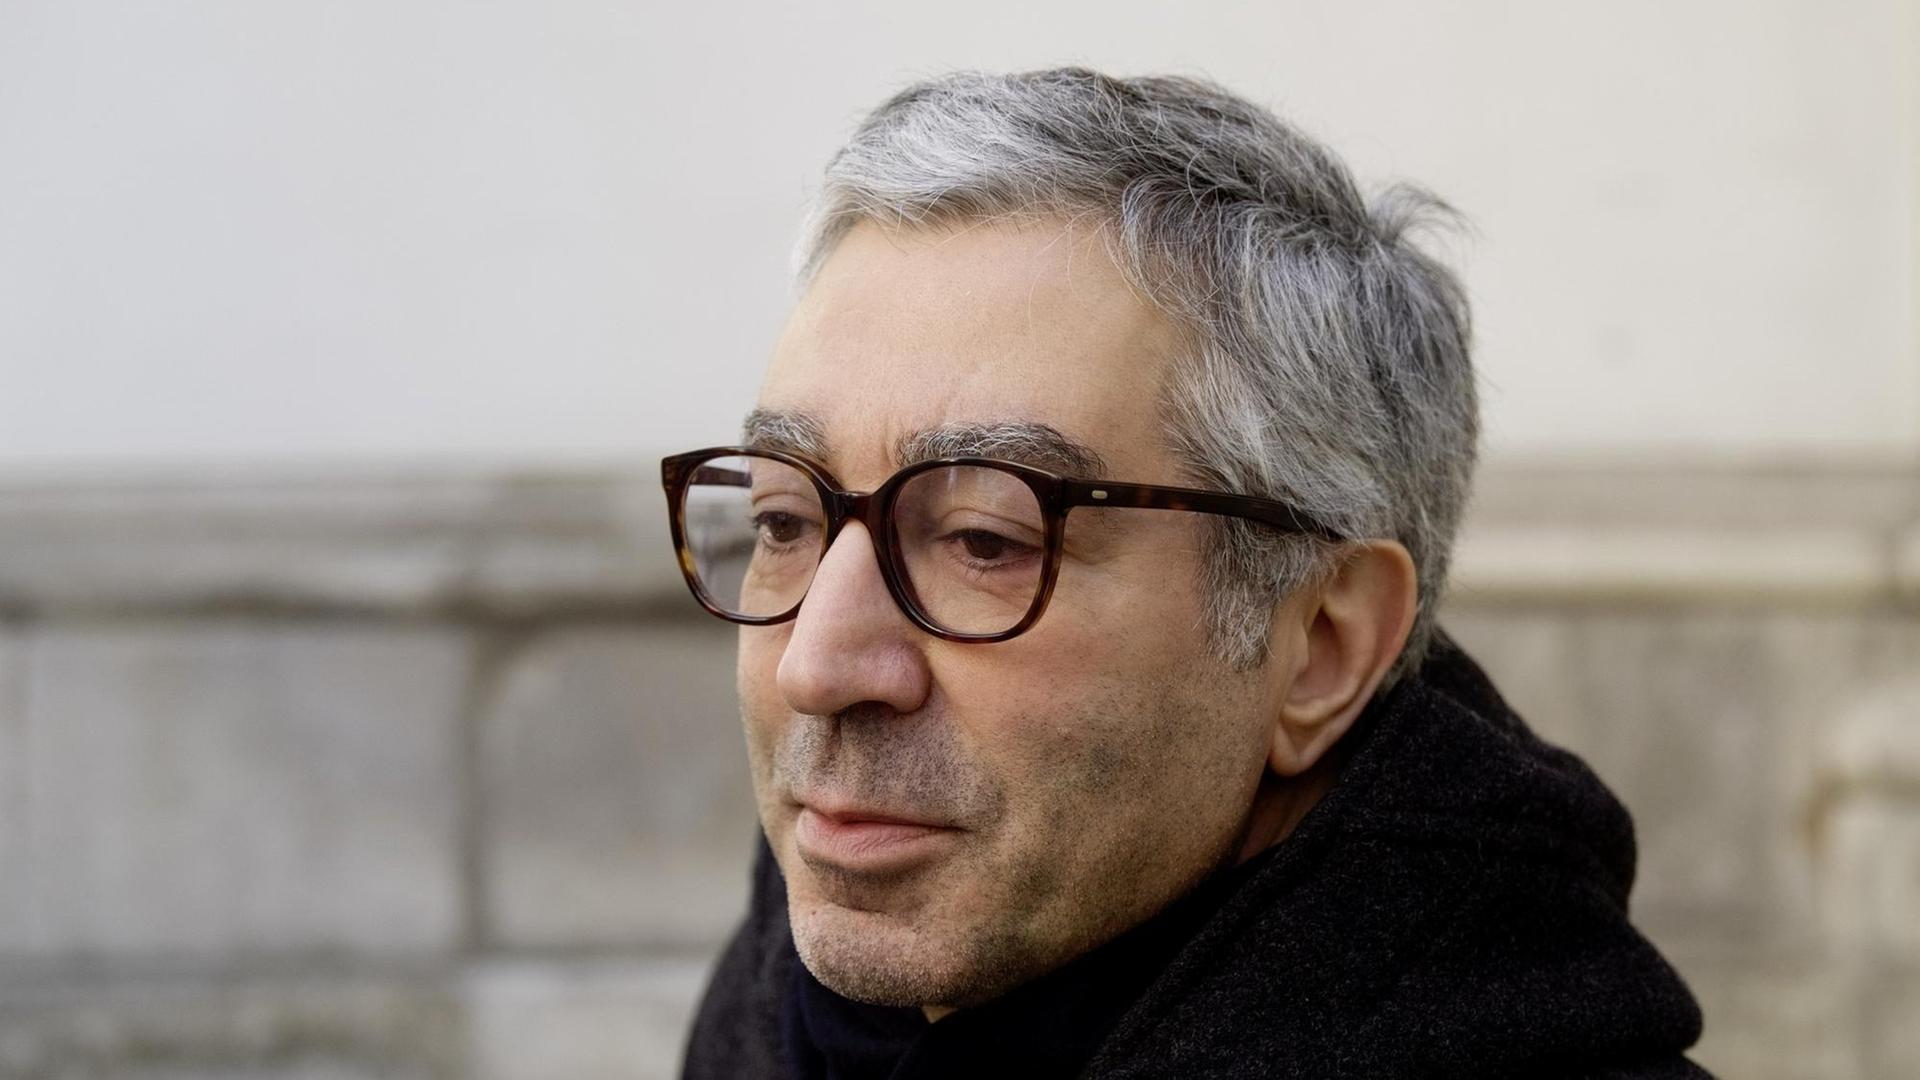 Portrait von Didier Eribon in Wien, mit Brille und einem schwarzen Schal um den Hals.